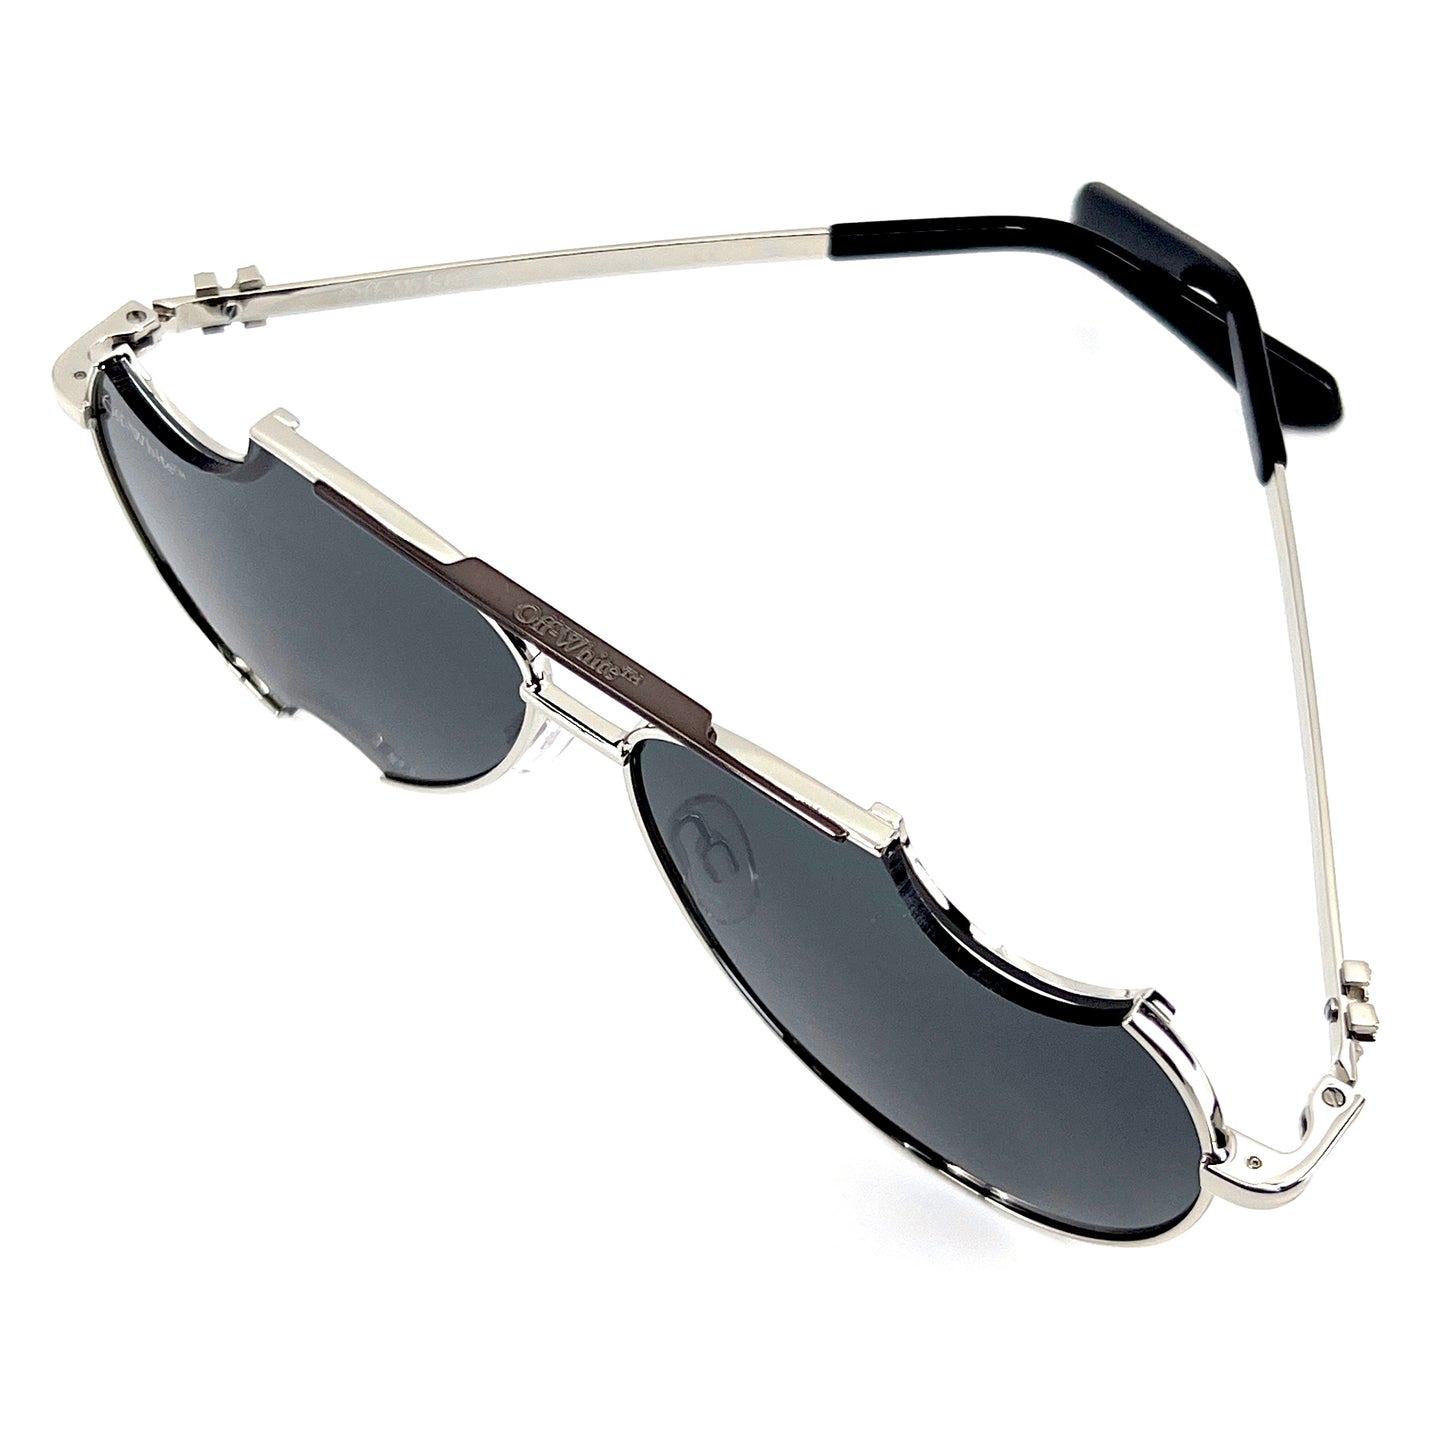 OFF-WHITE Sunglasses DALLAS OERI071 7207